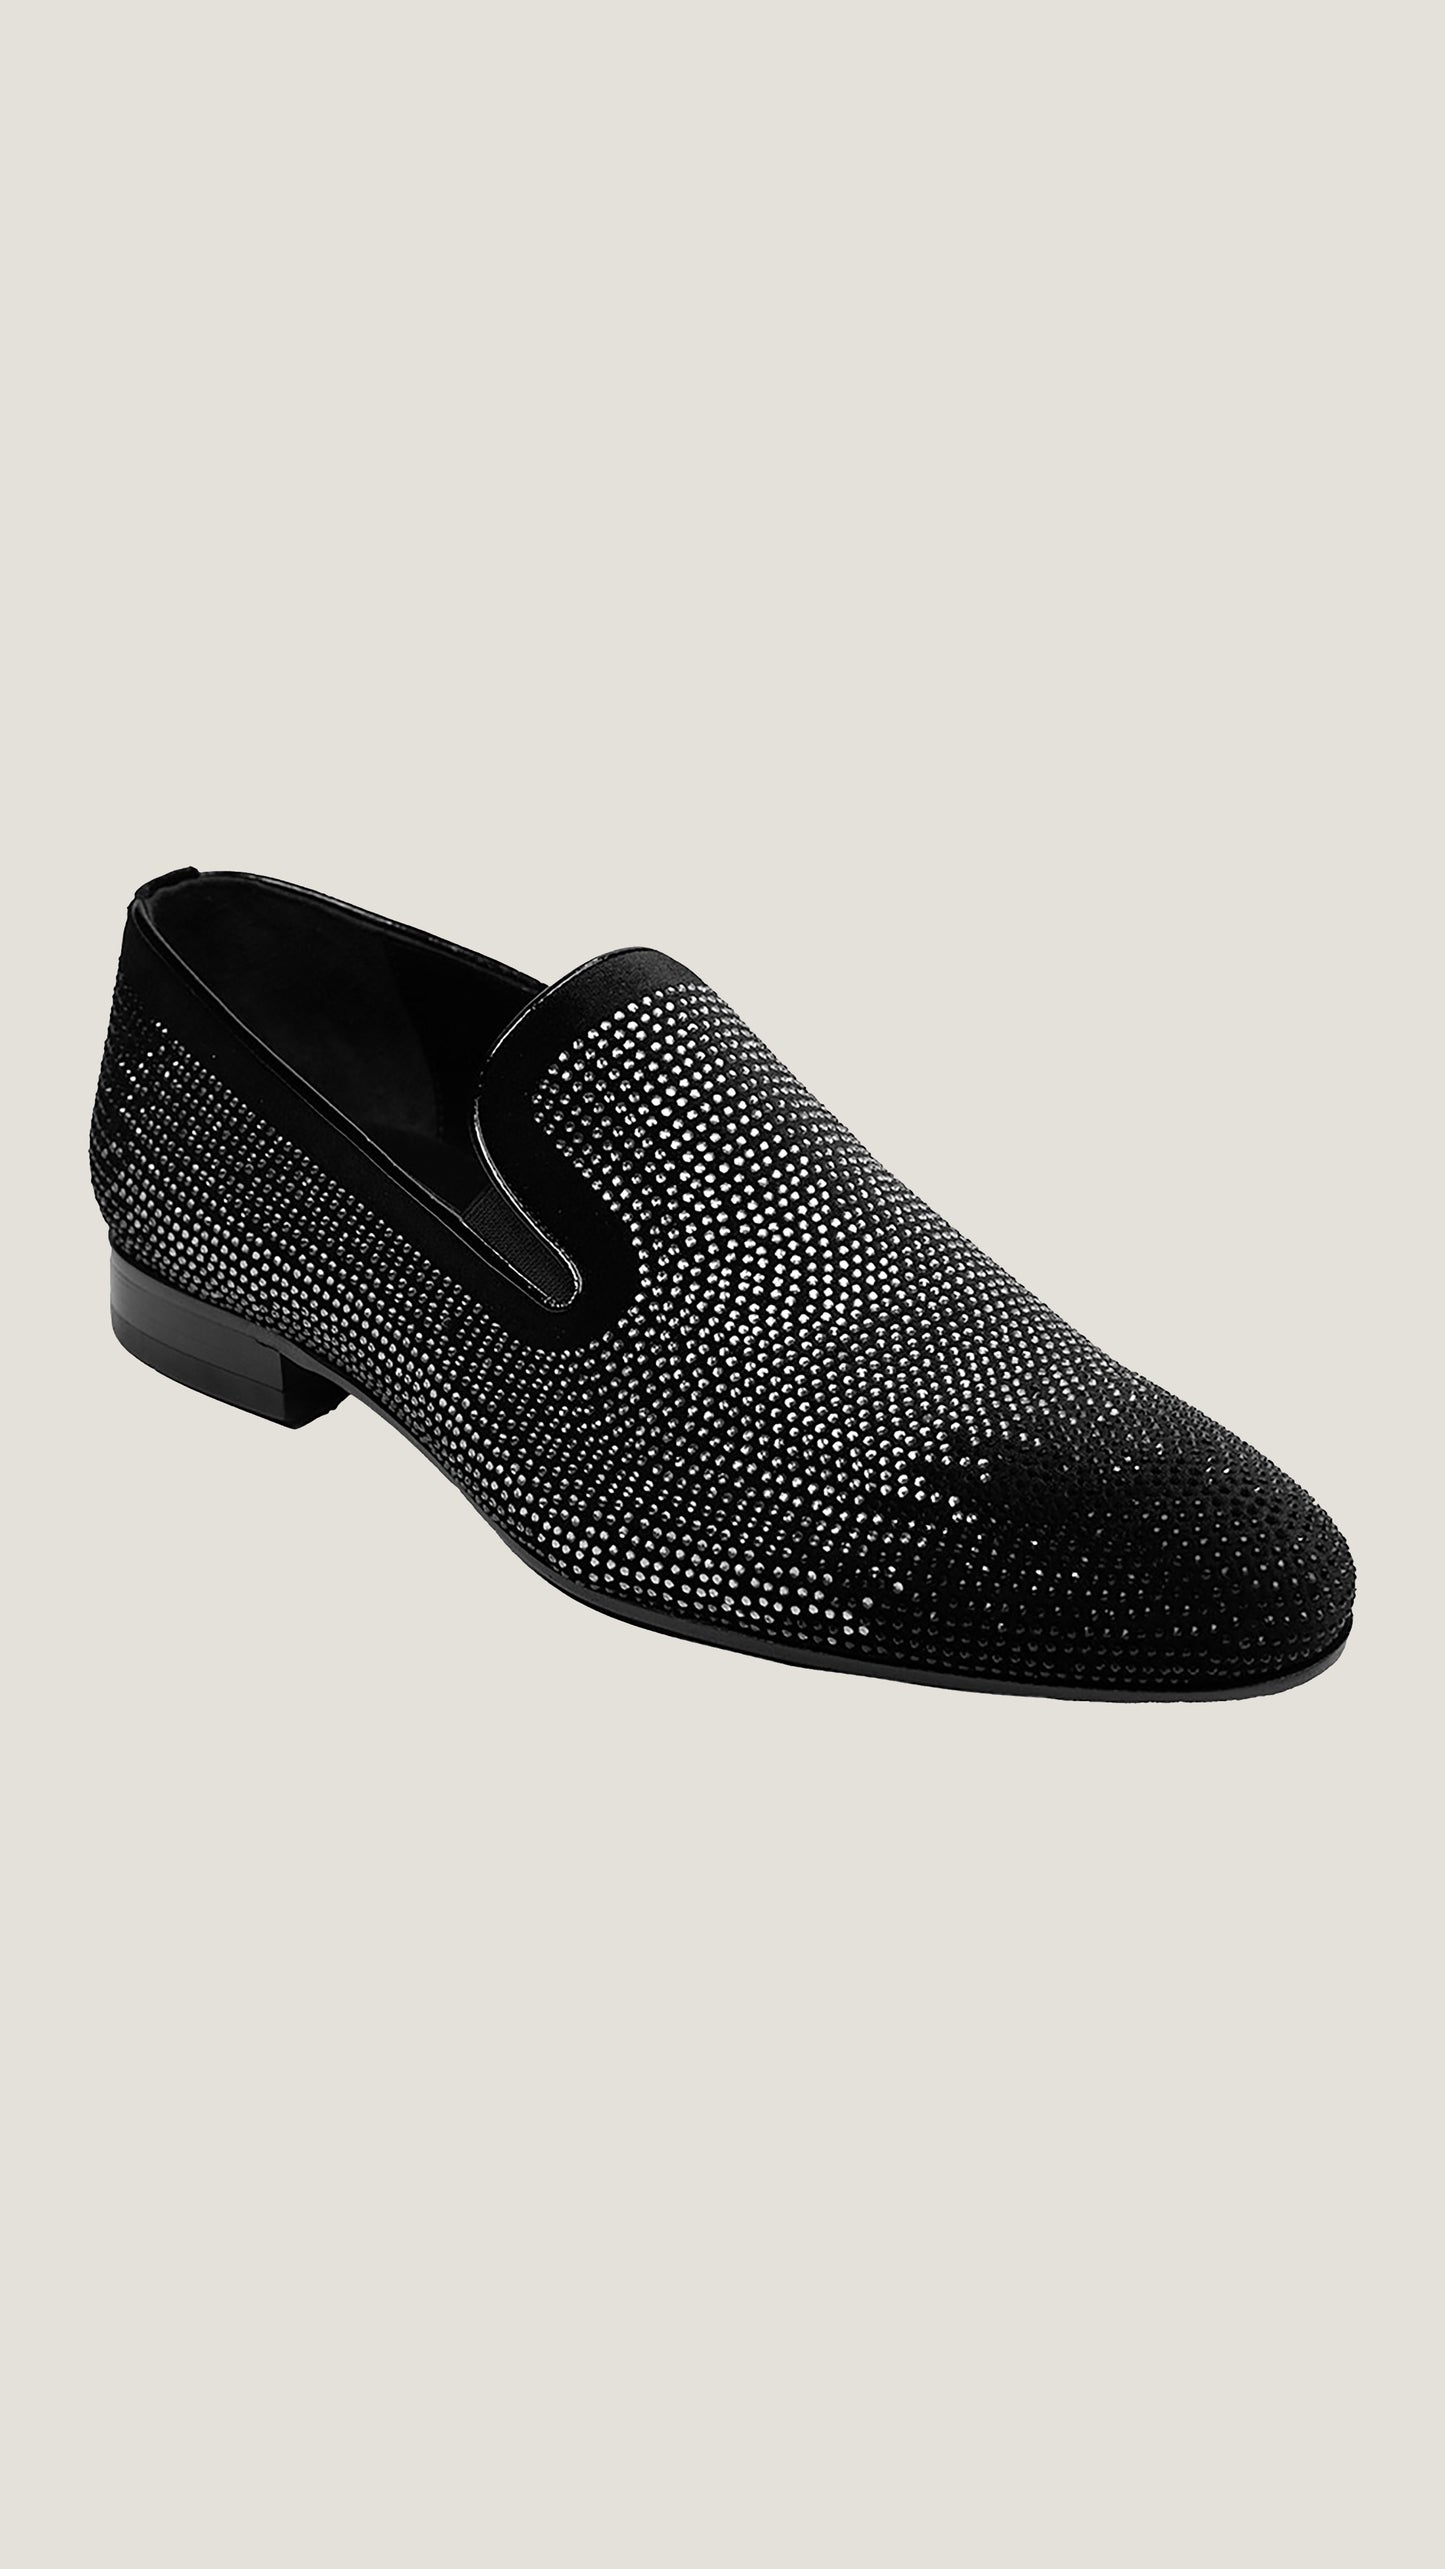 Men's Designer Crystal-Embellished Loafers by Vercini